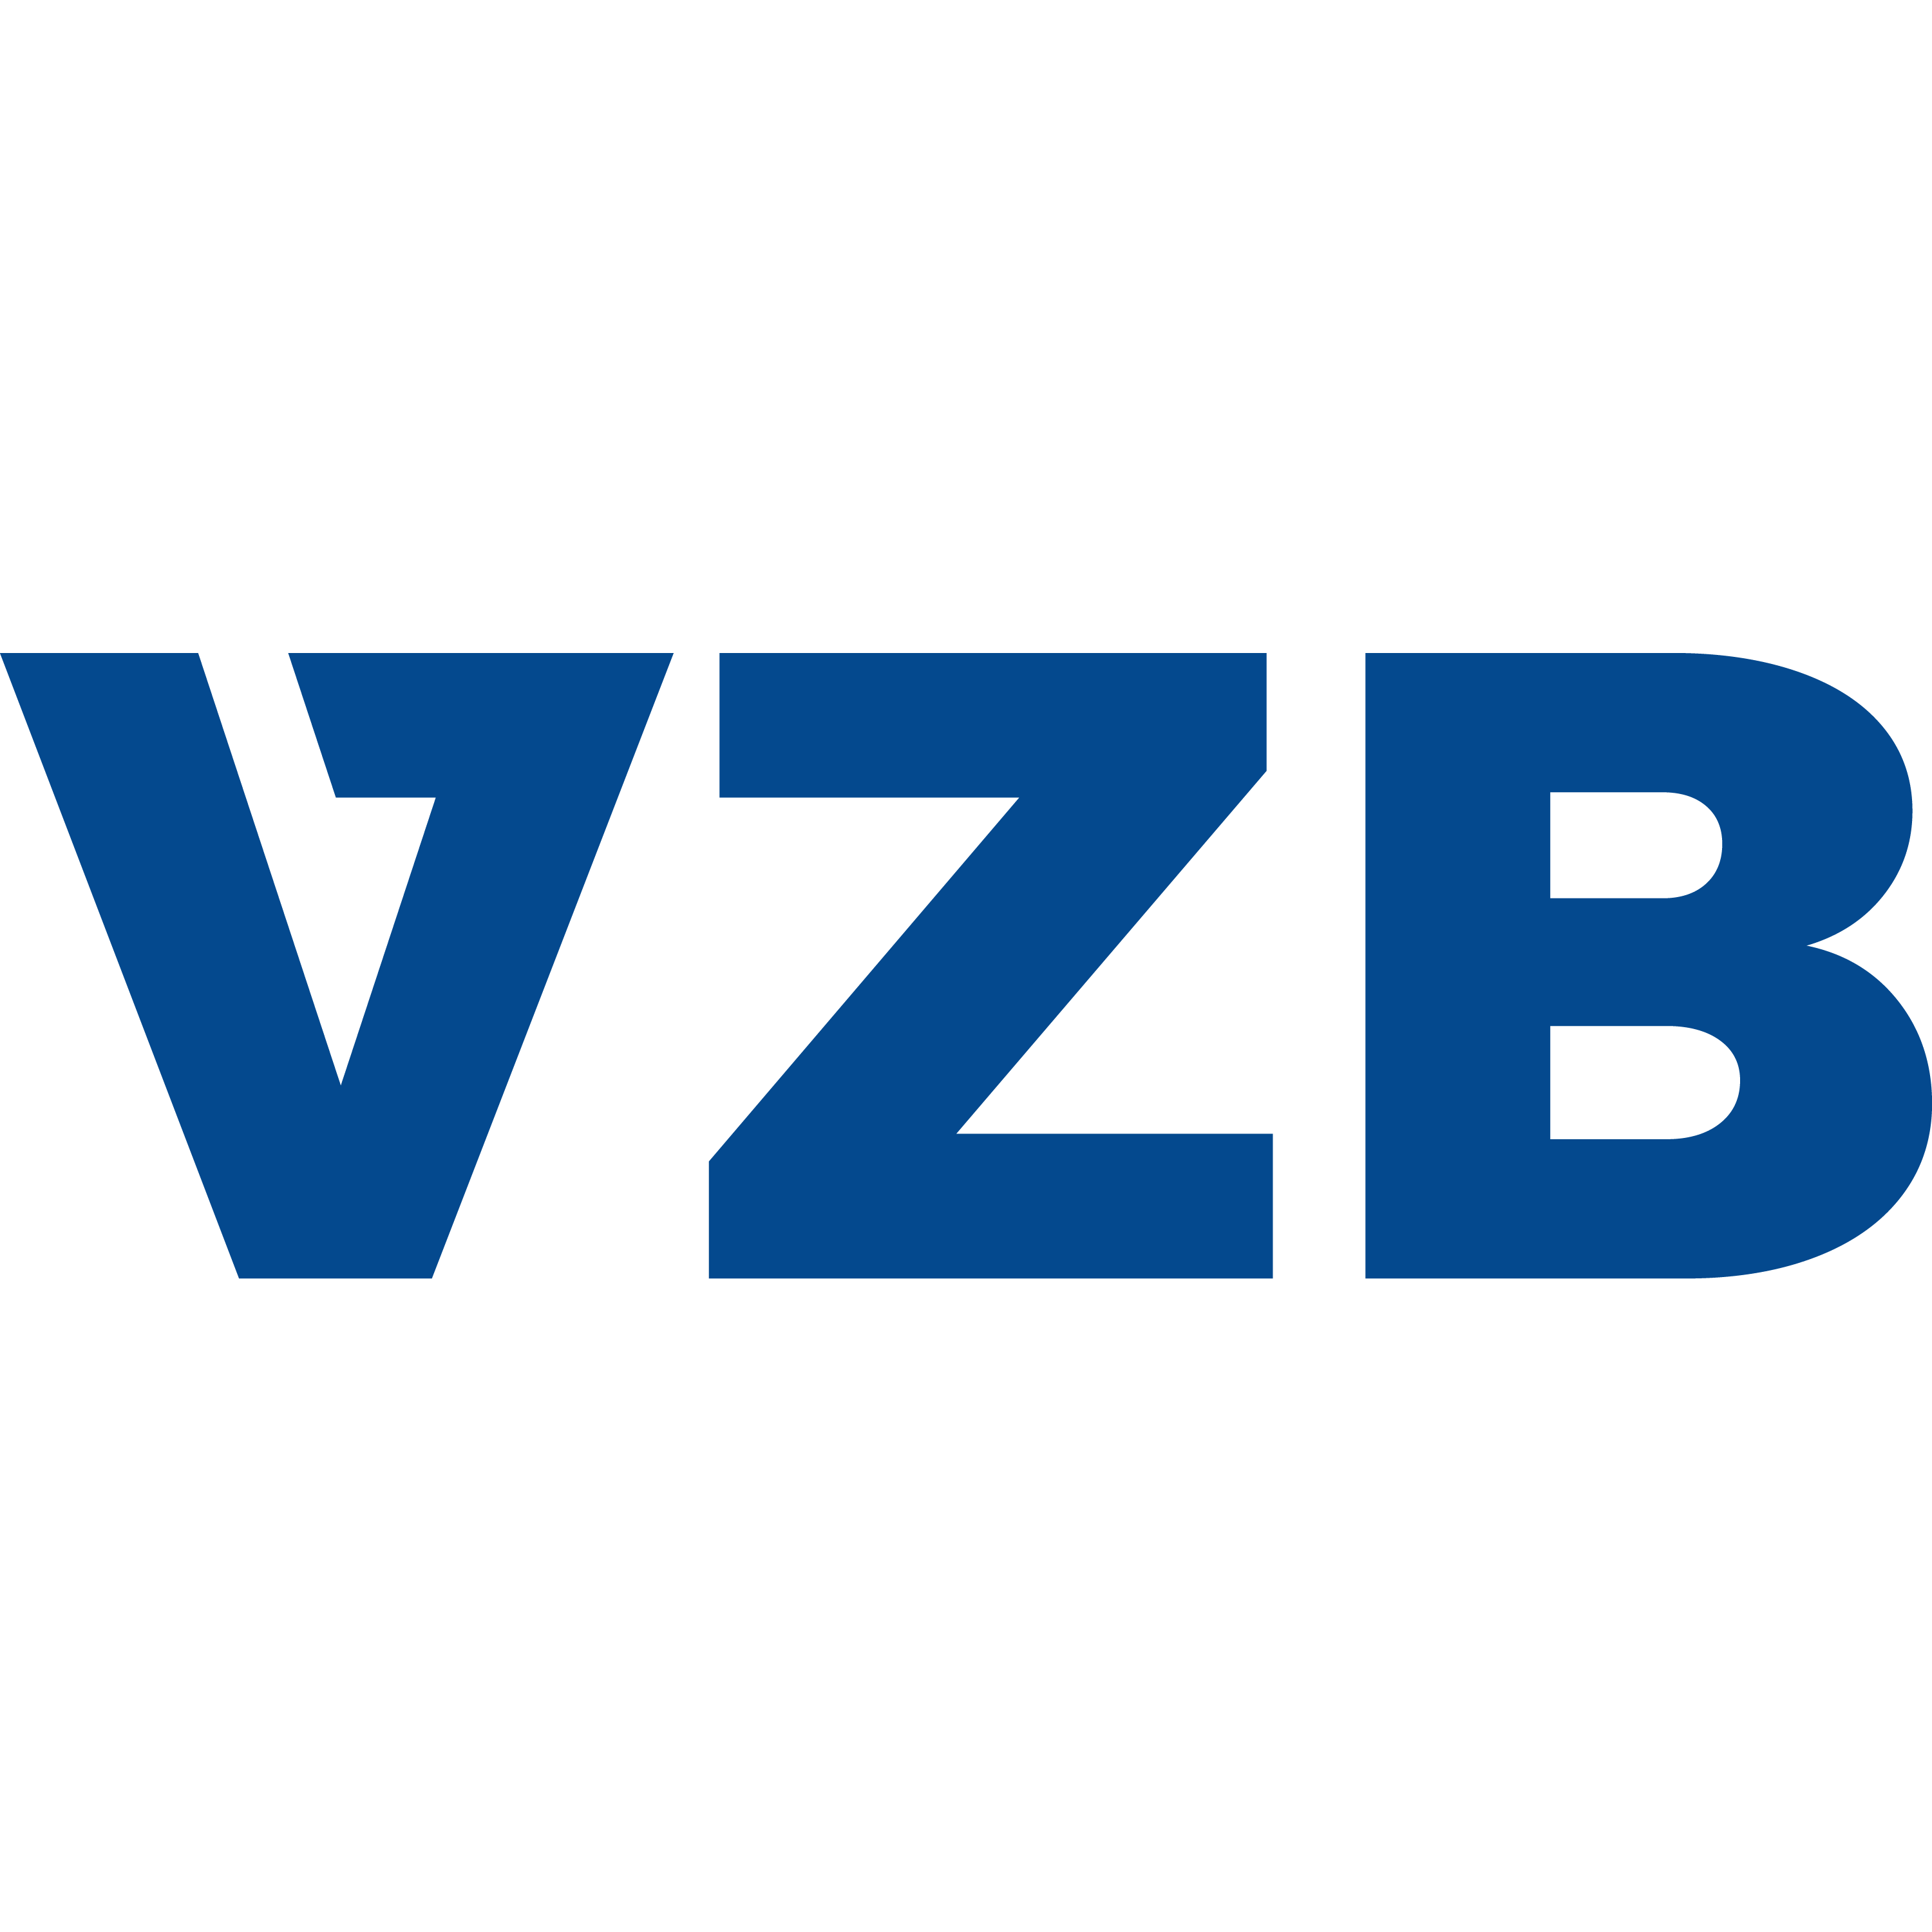 Verkehrsausbildungs-Zentrum Biel-Seeland (VZB) Logo